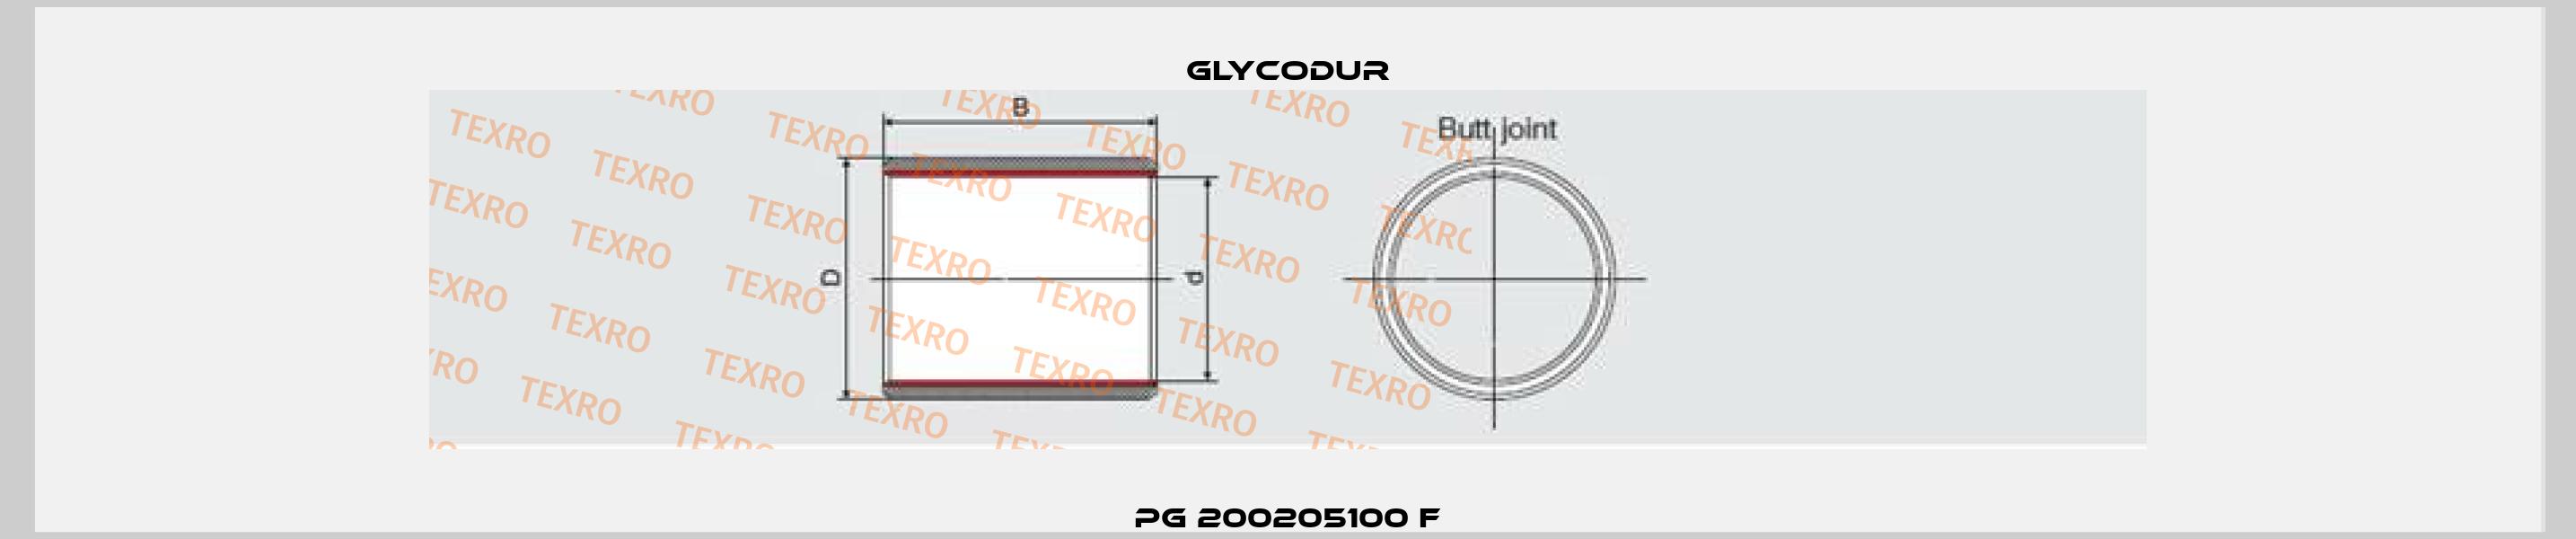 PG 200205100 F Glycodur